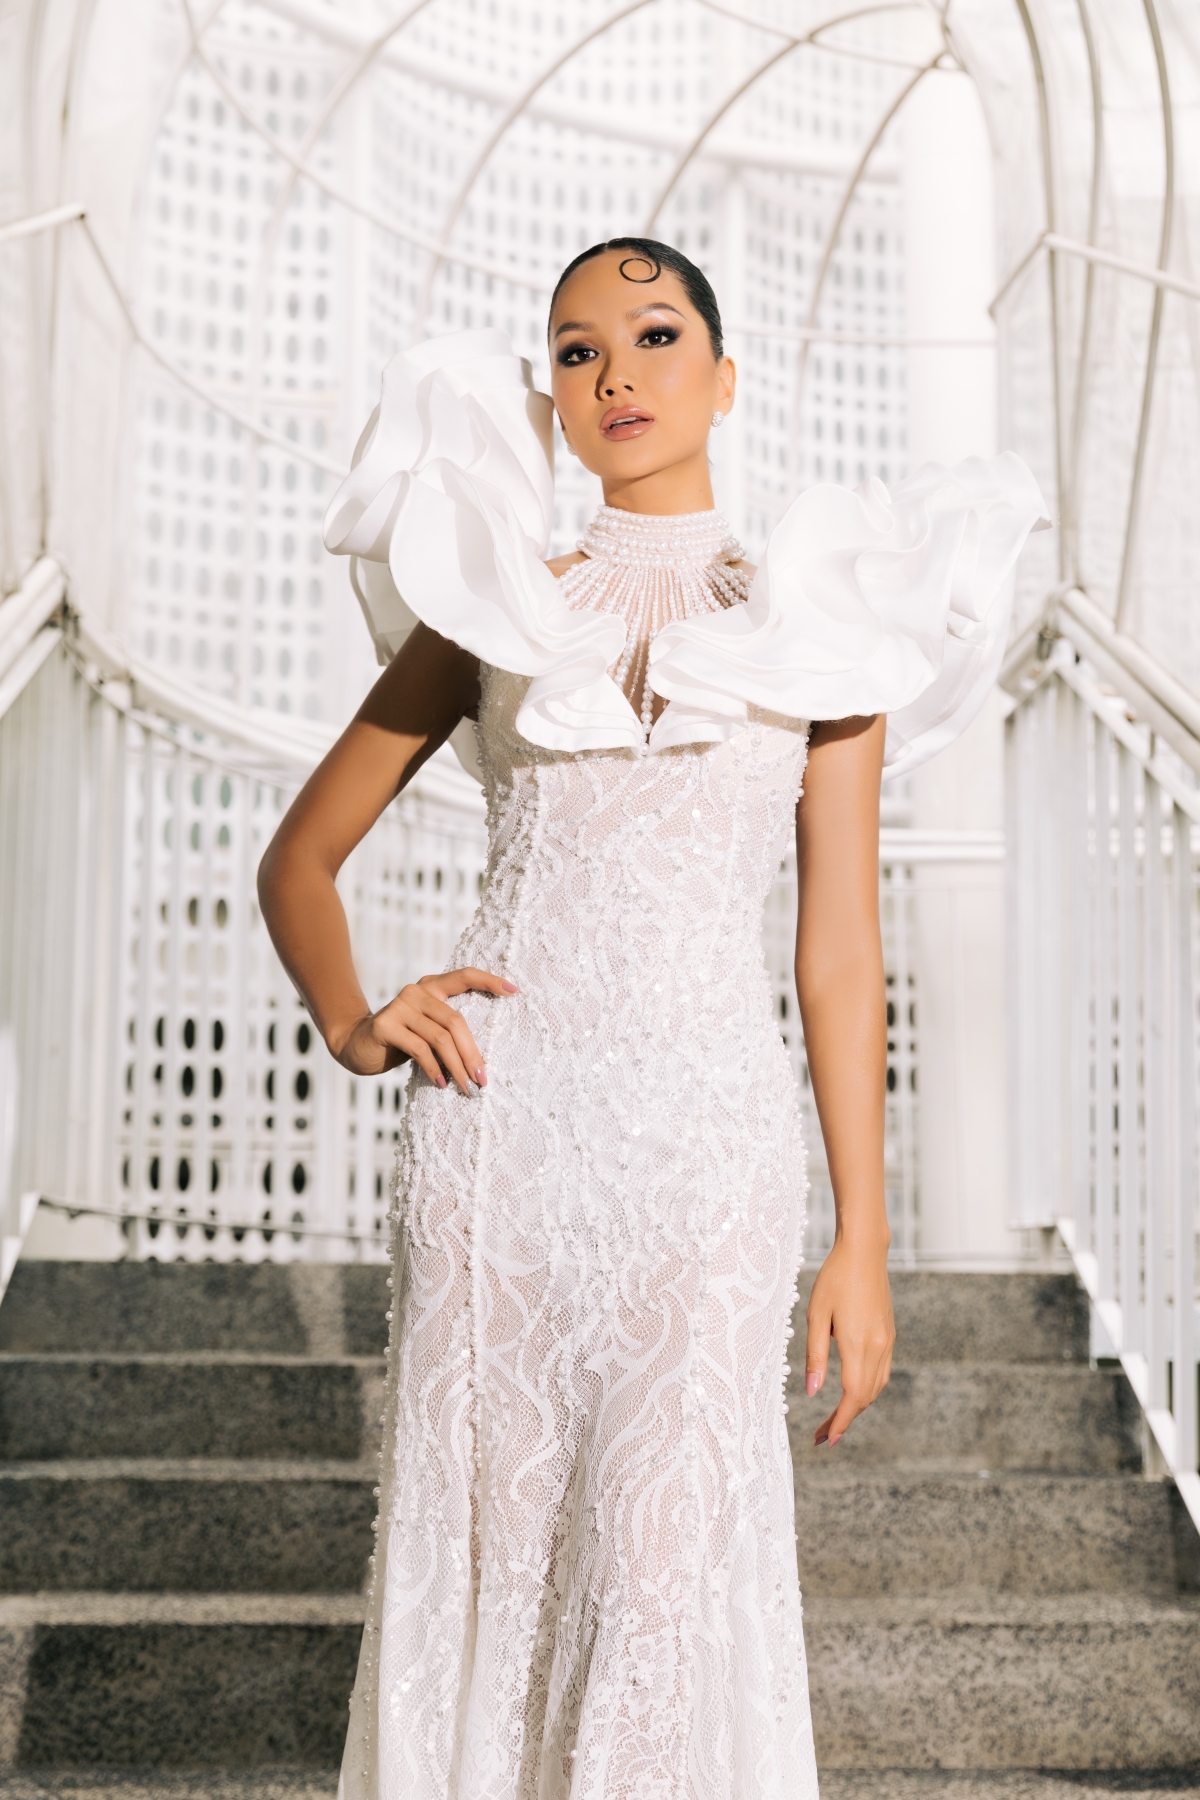 H'Hen Niê tái hiện hình ảnh hoa cà phê với chiếc váy trắng - Ảnh 6.